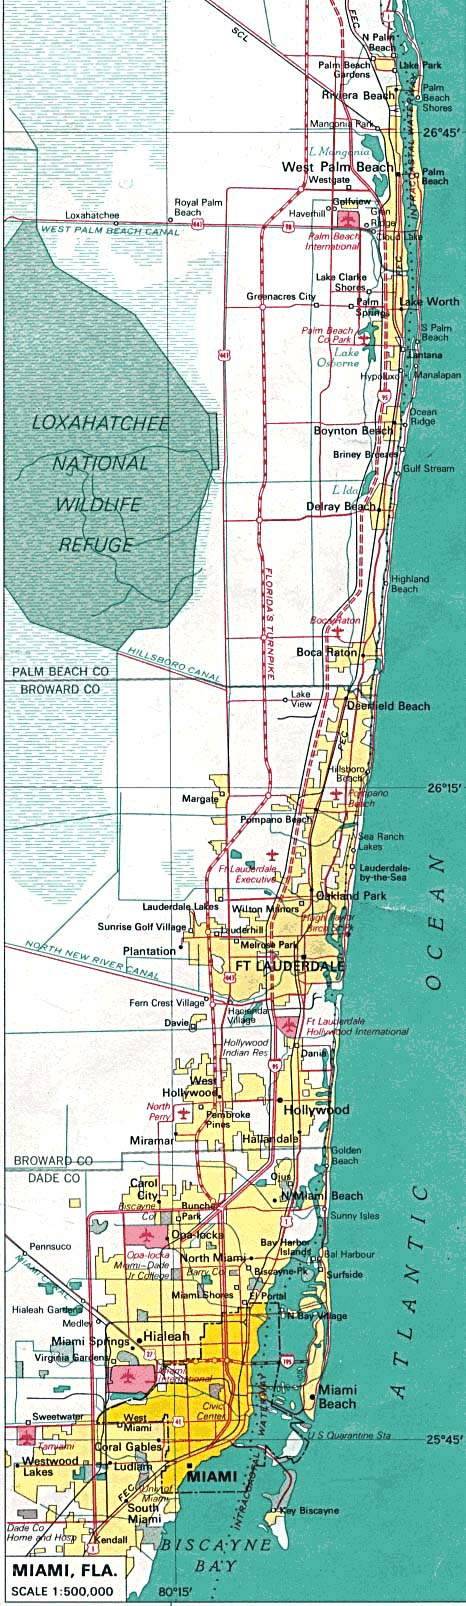 mapa de la ciudad de miami, florida, estados unidos - mapa